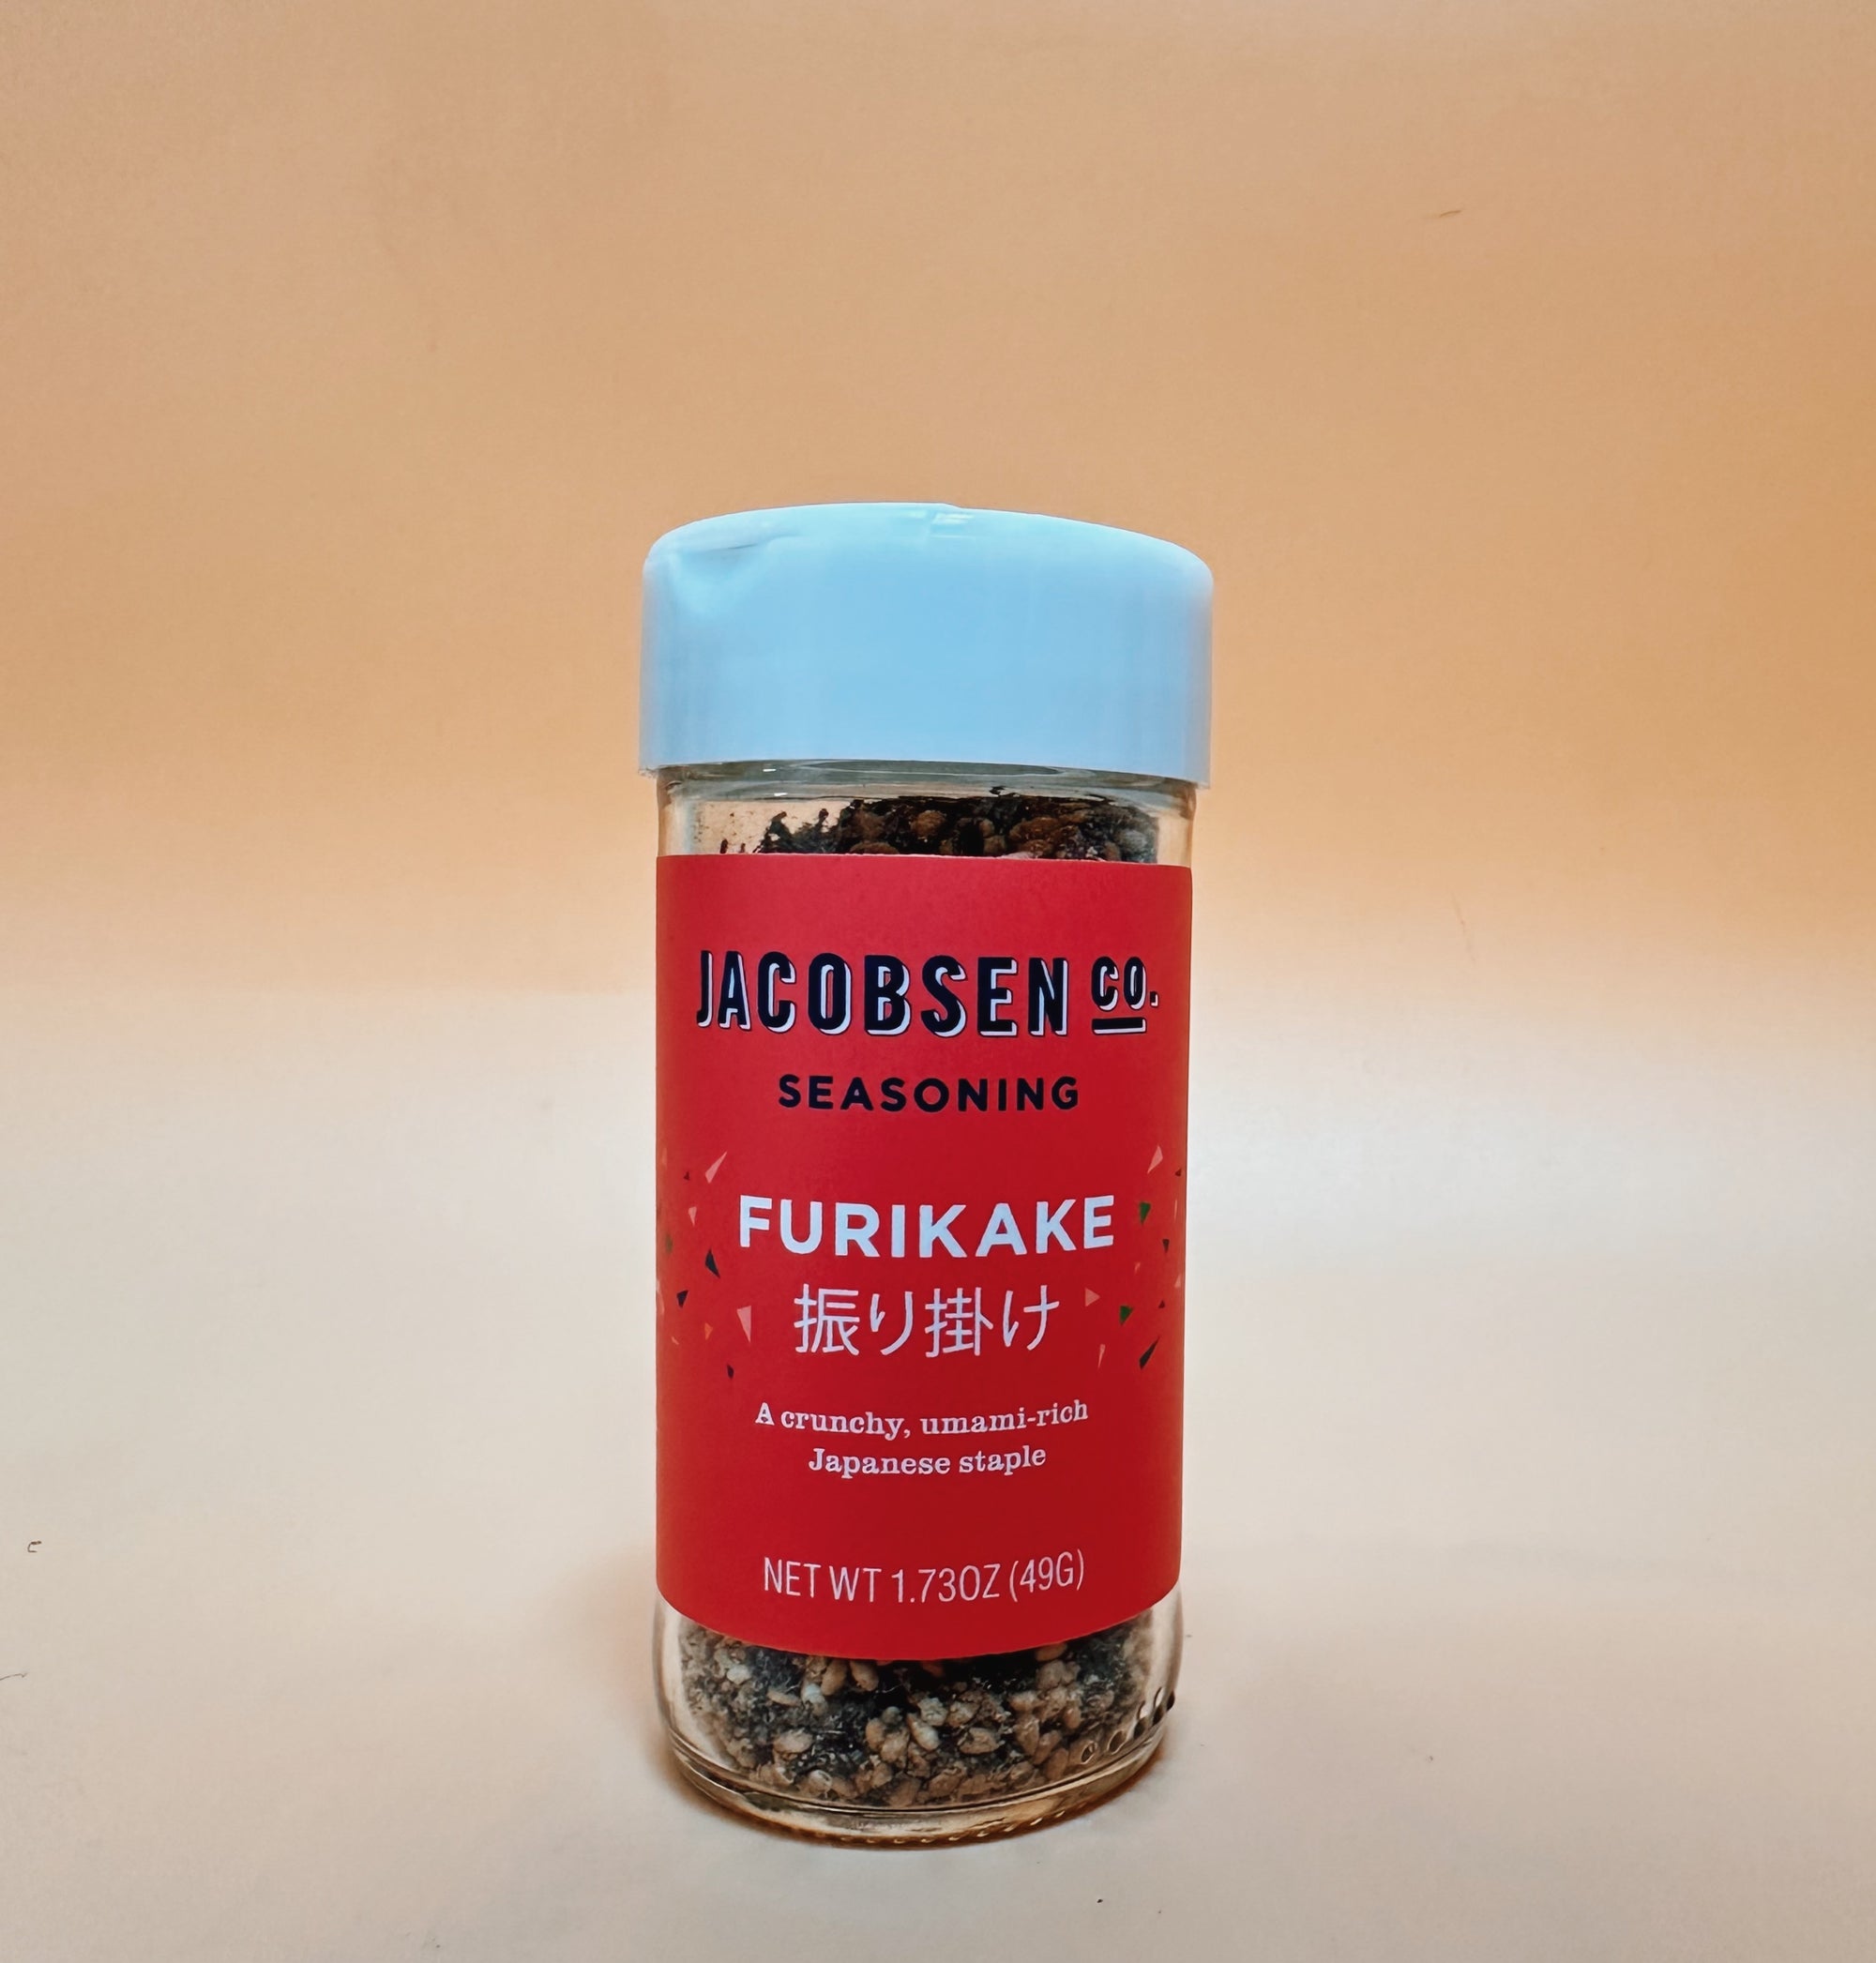 Jacobsen Co. Furikake Seasoning